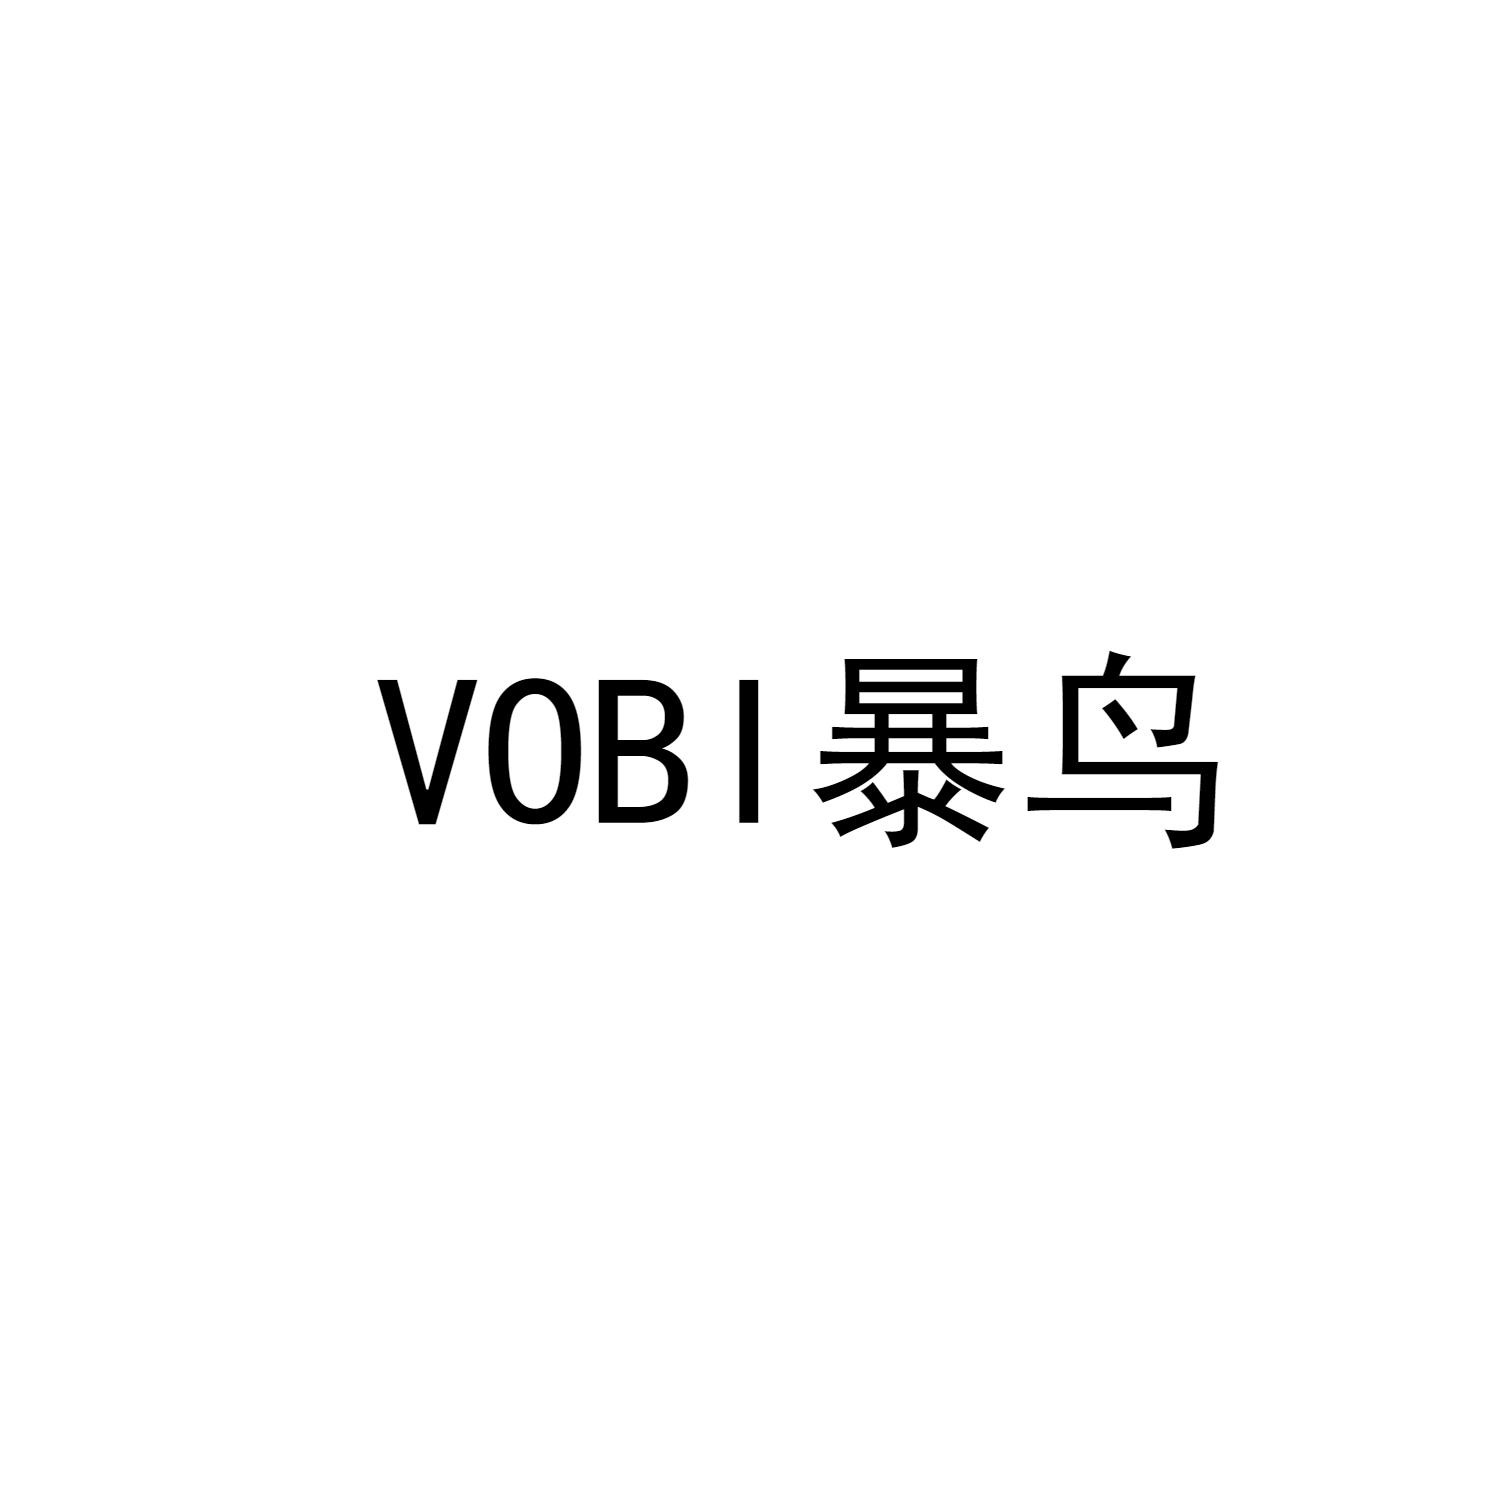 18类-箱包皮具VOBI 暴鸟商标转让